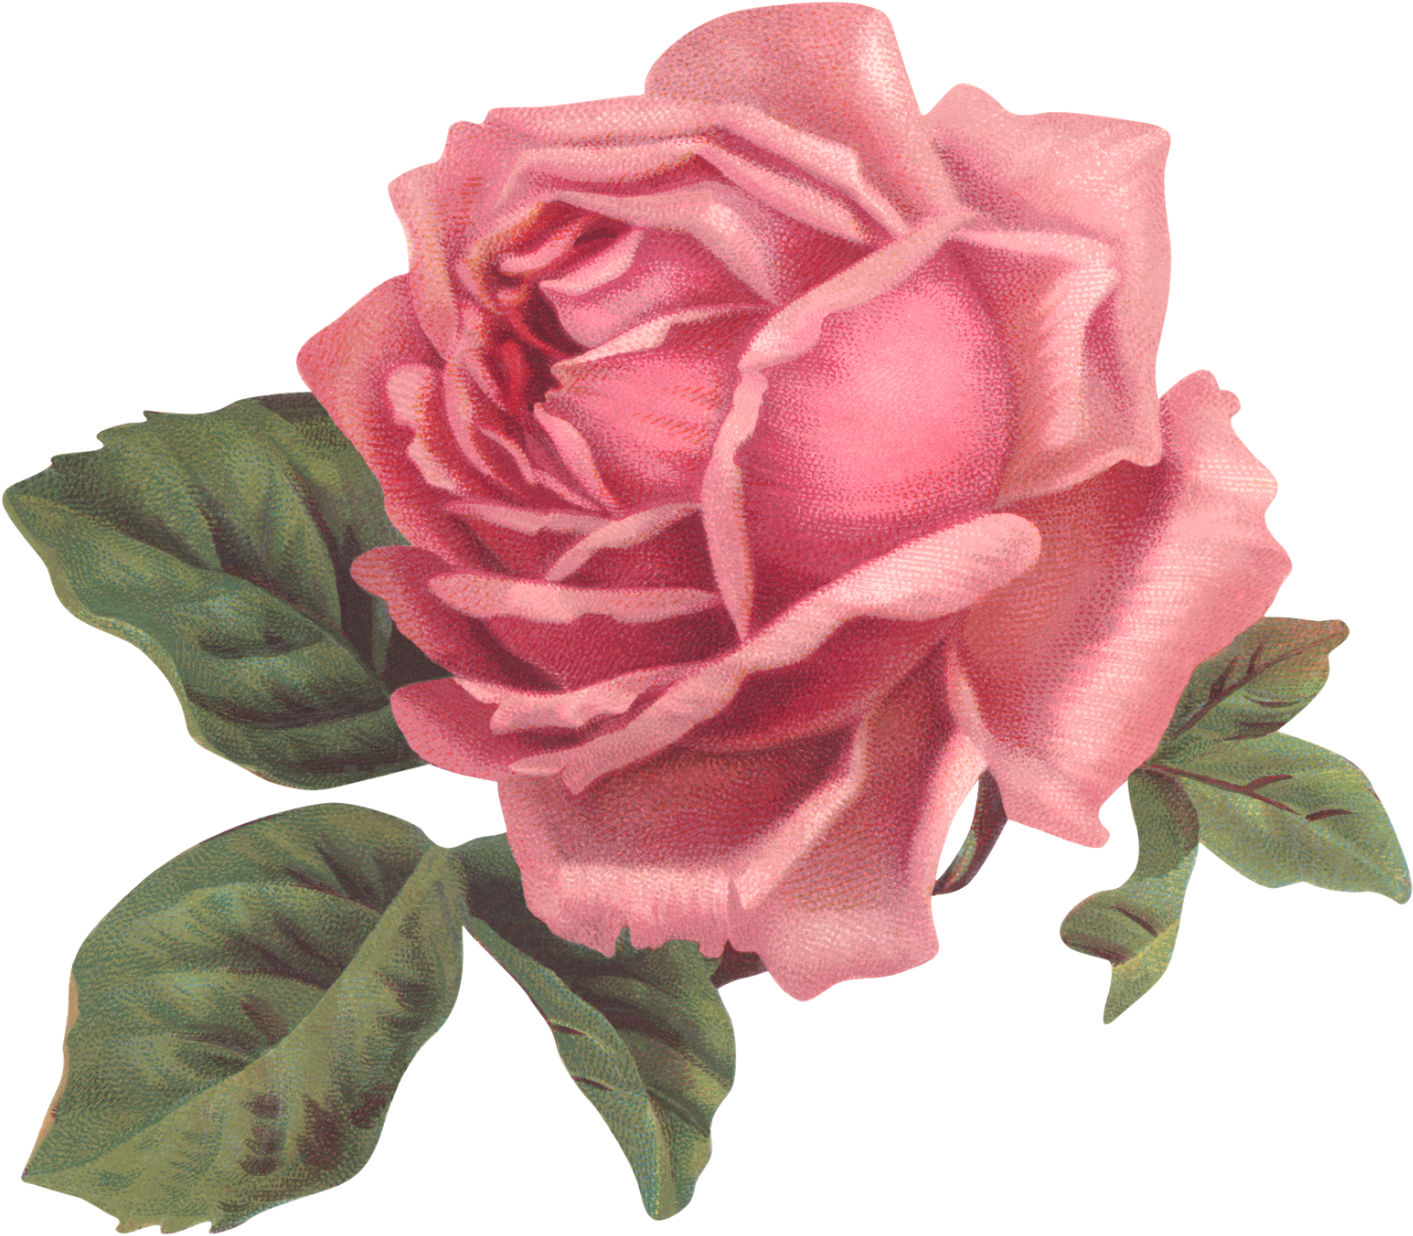 Un Poco De Romanticismo Antes Que Acabe El Domingo - Old Rose Informant By Brent C Dickerson (1600x1350)